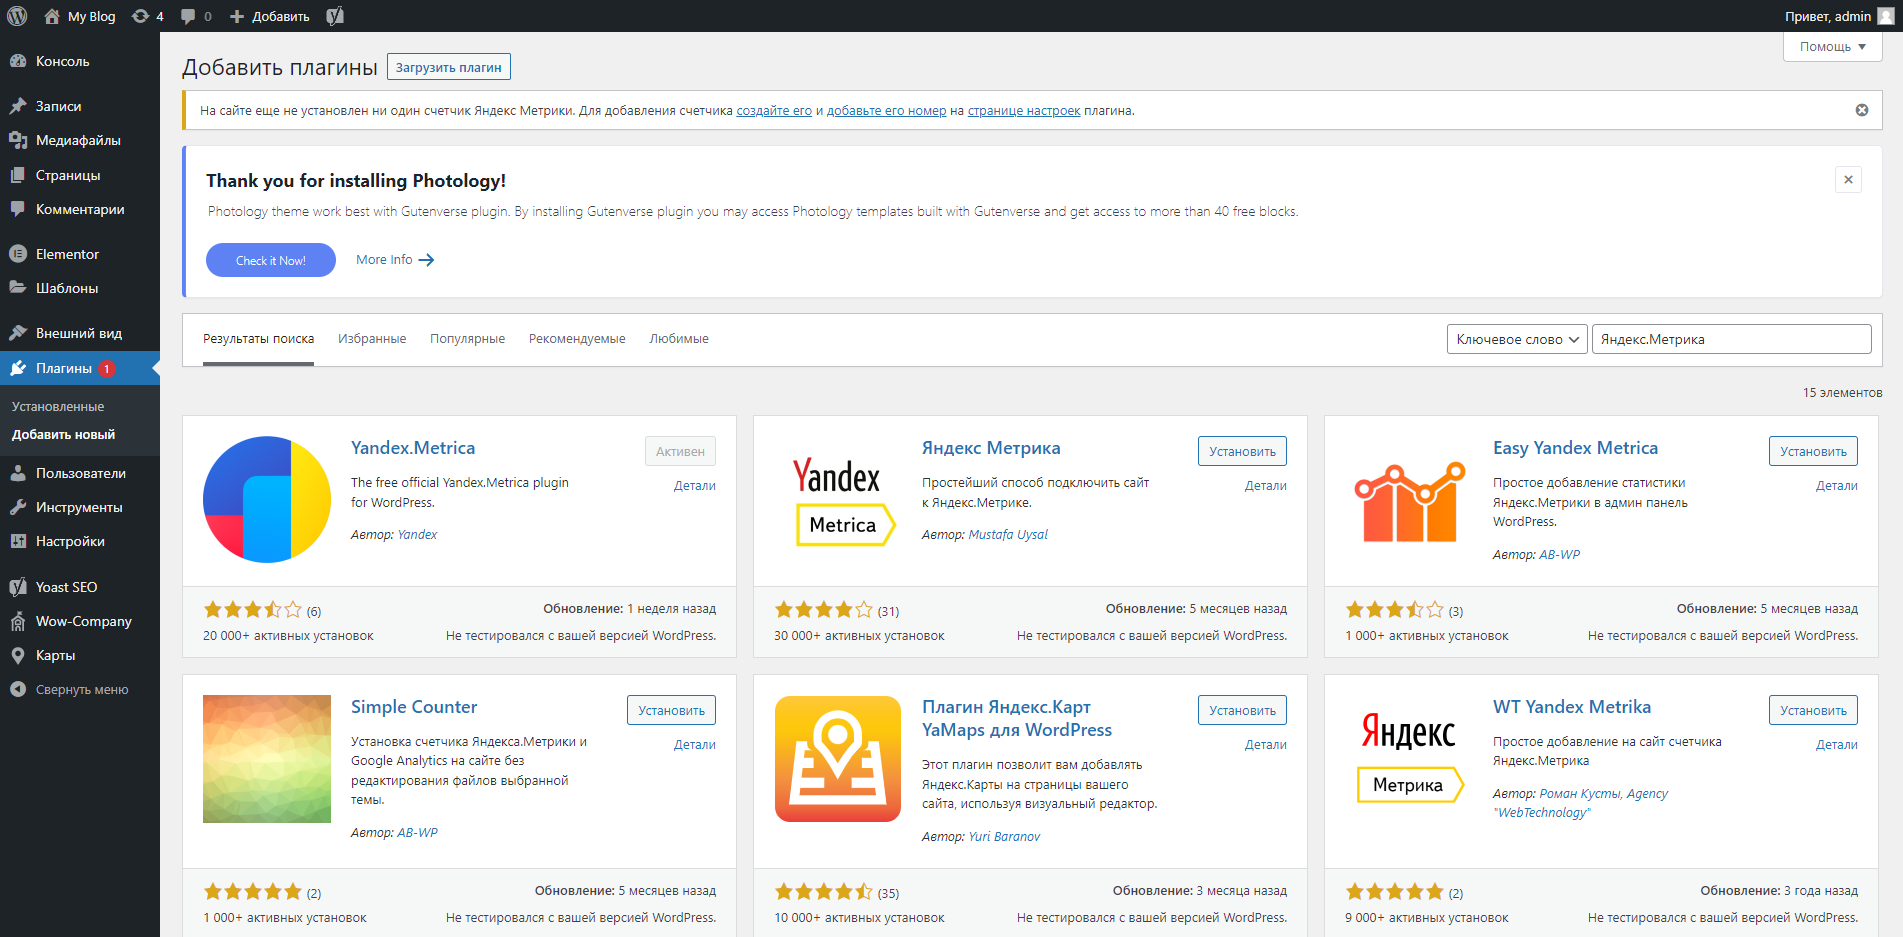 Плагины Wordpress для Яндекс.Метрики